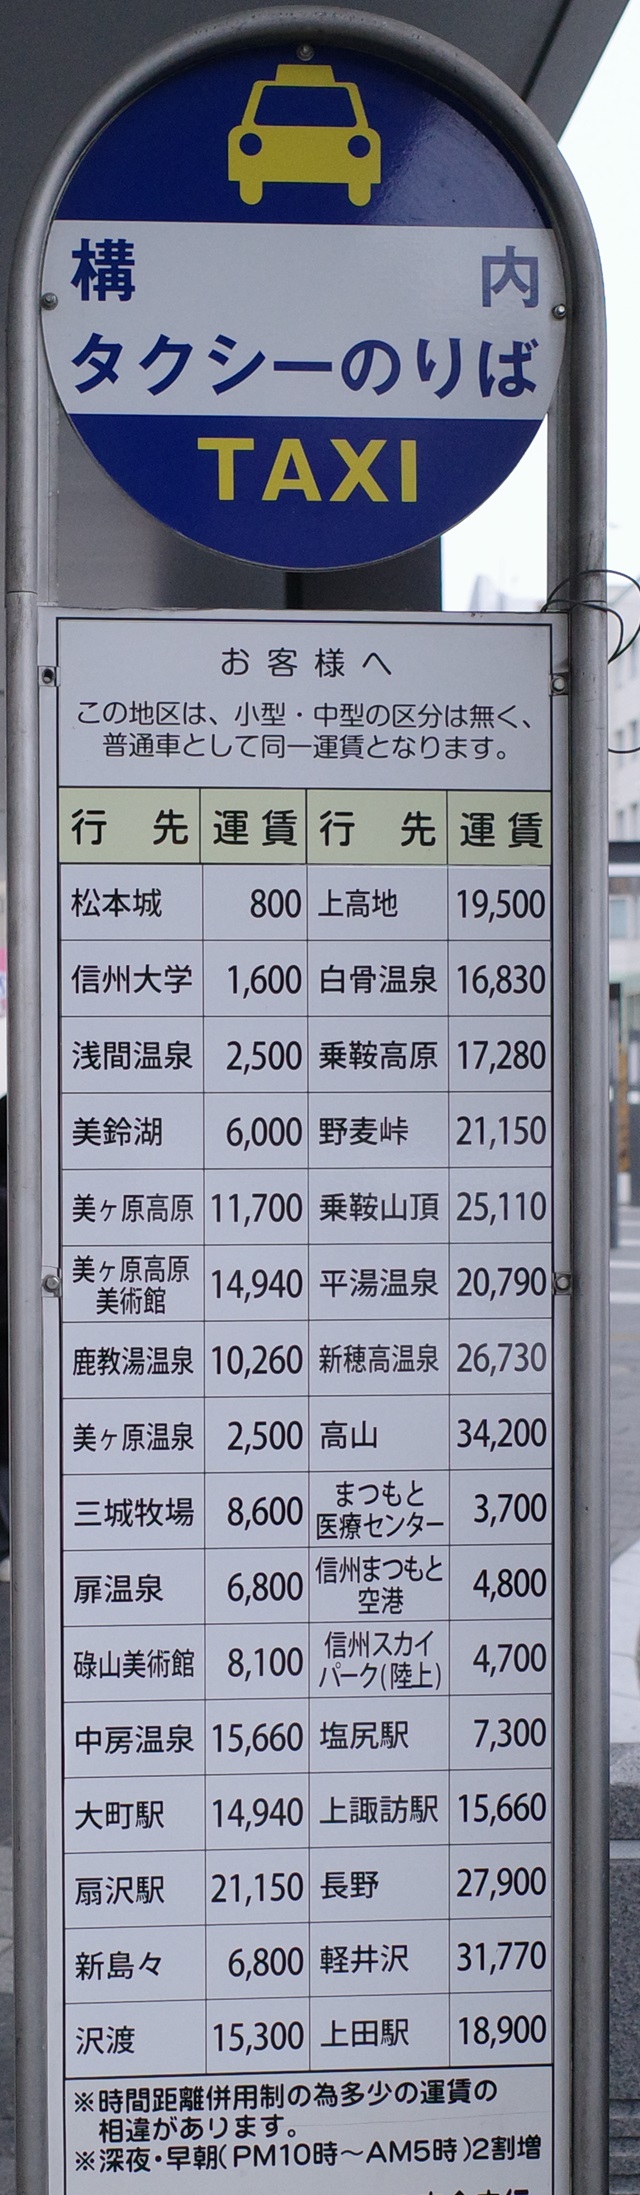 松本駅のタクシー料金表